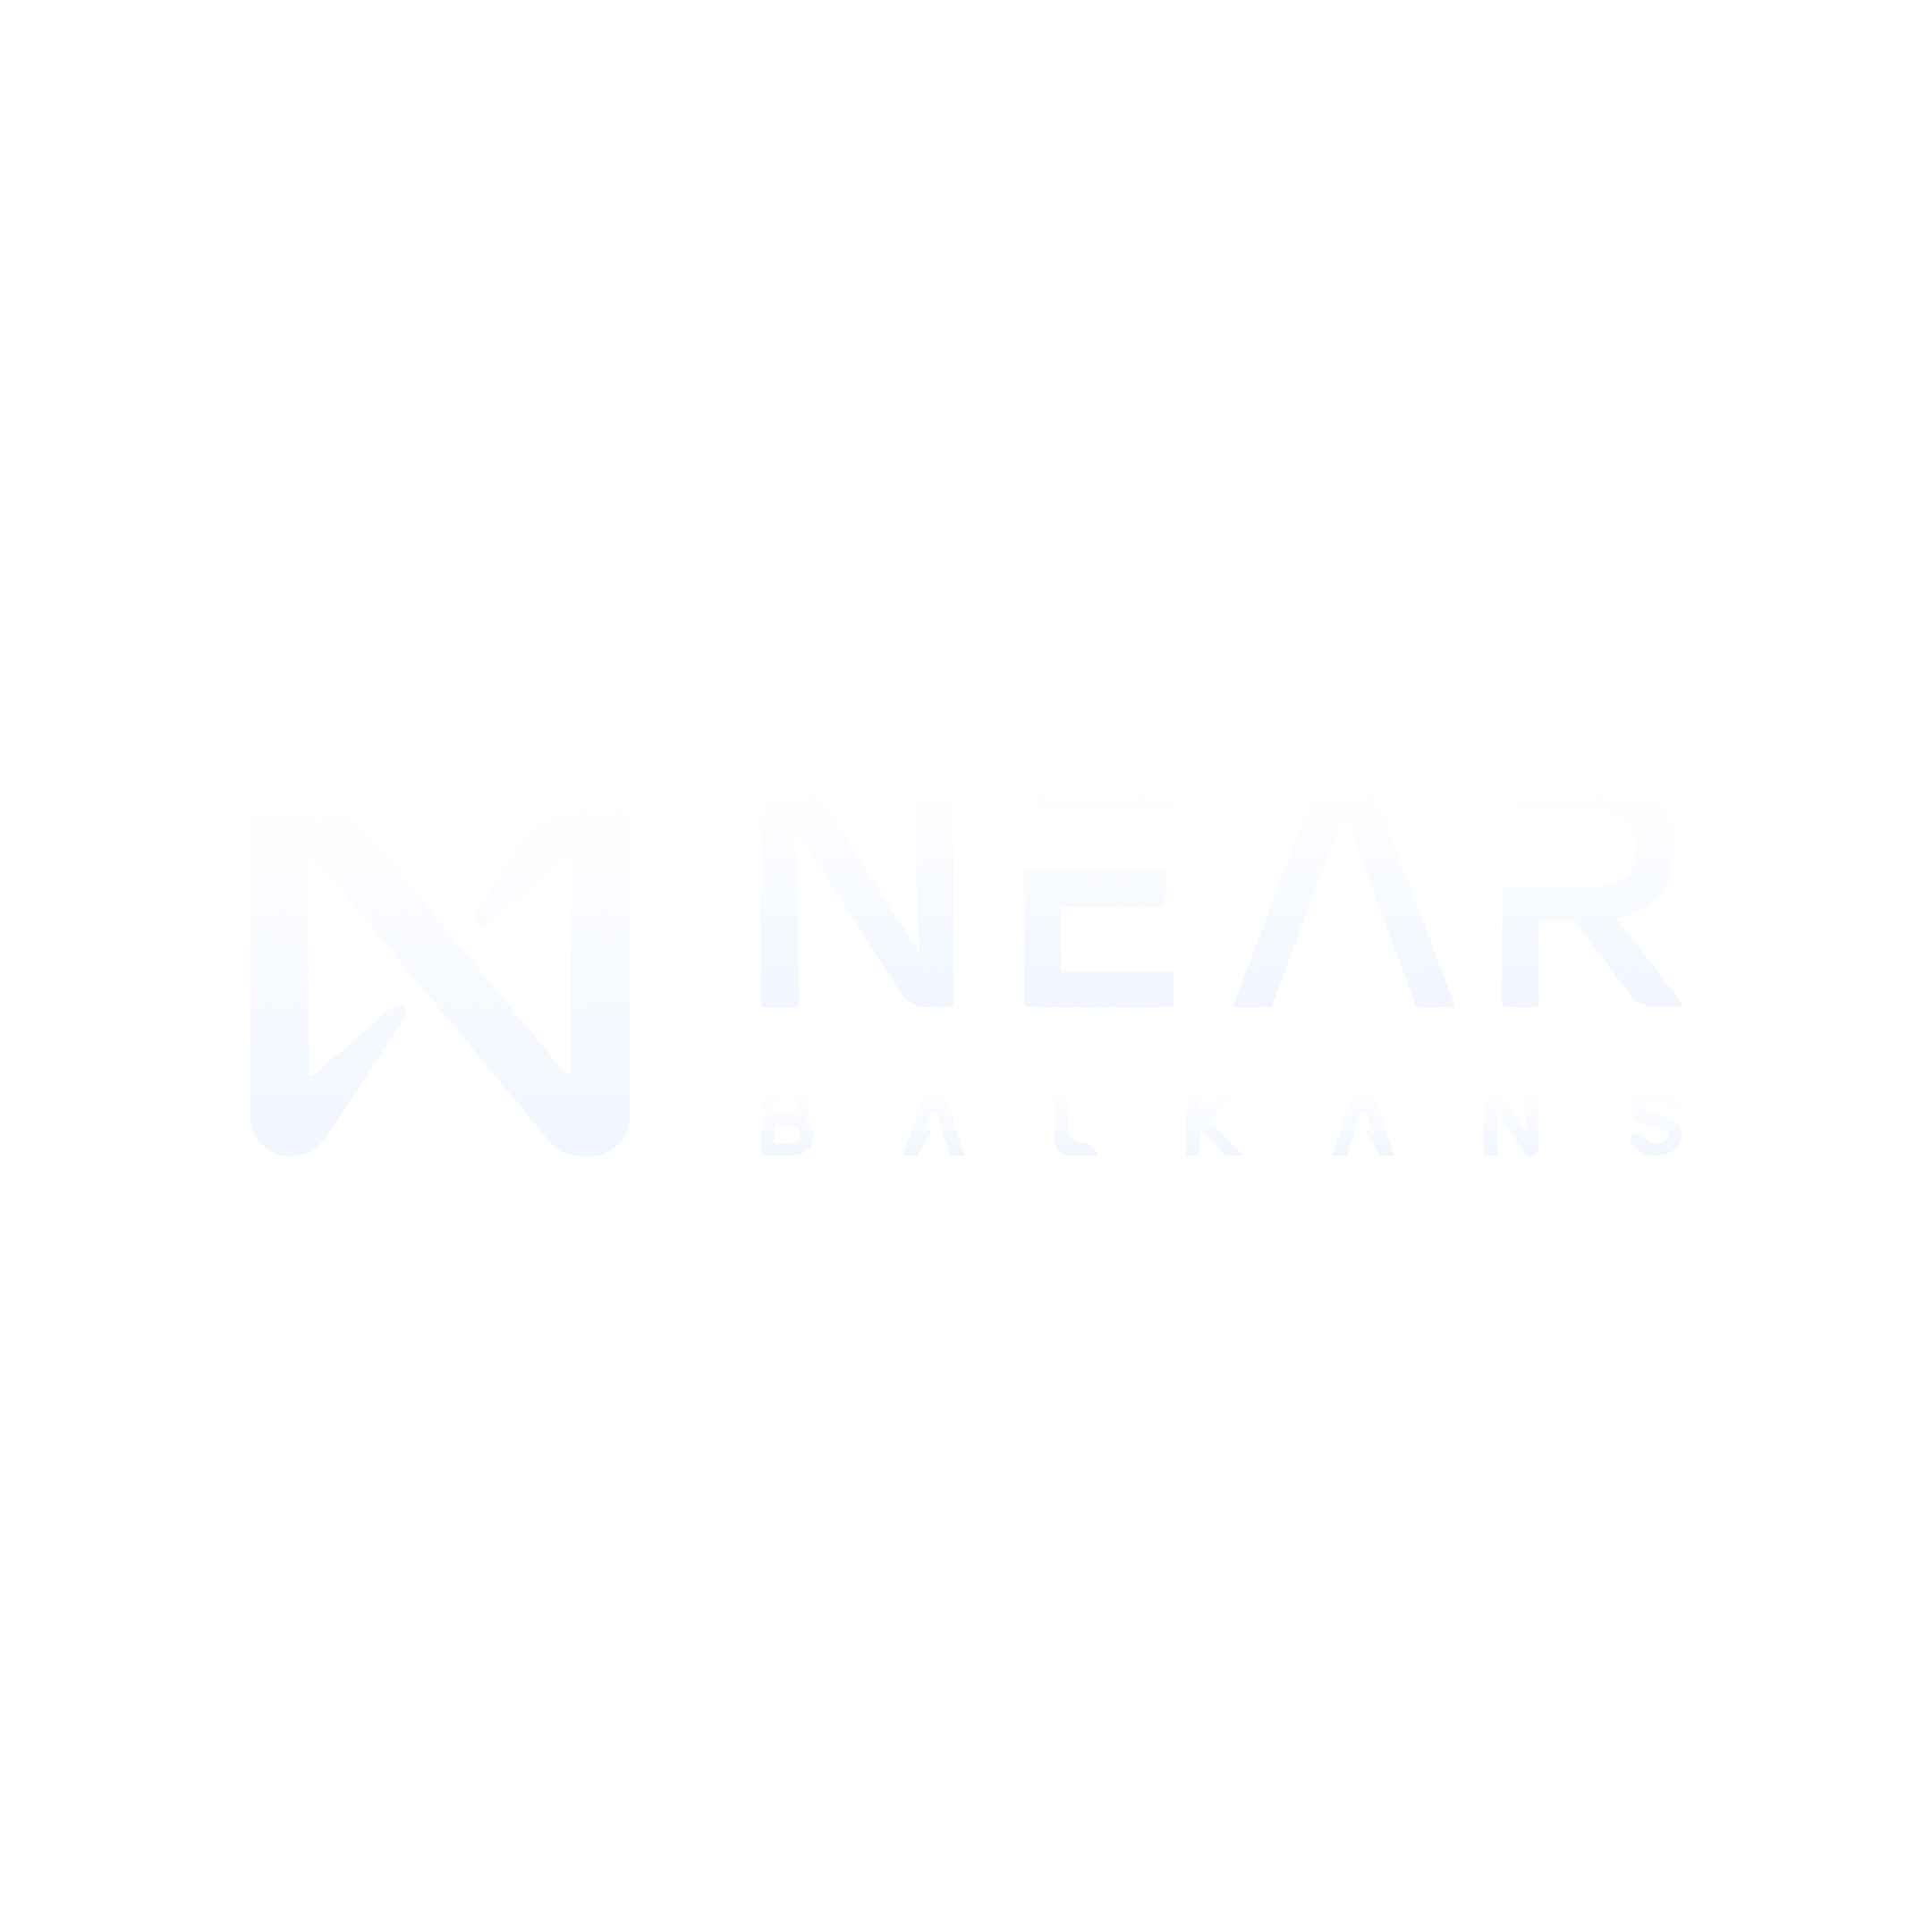 Near Balkans